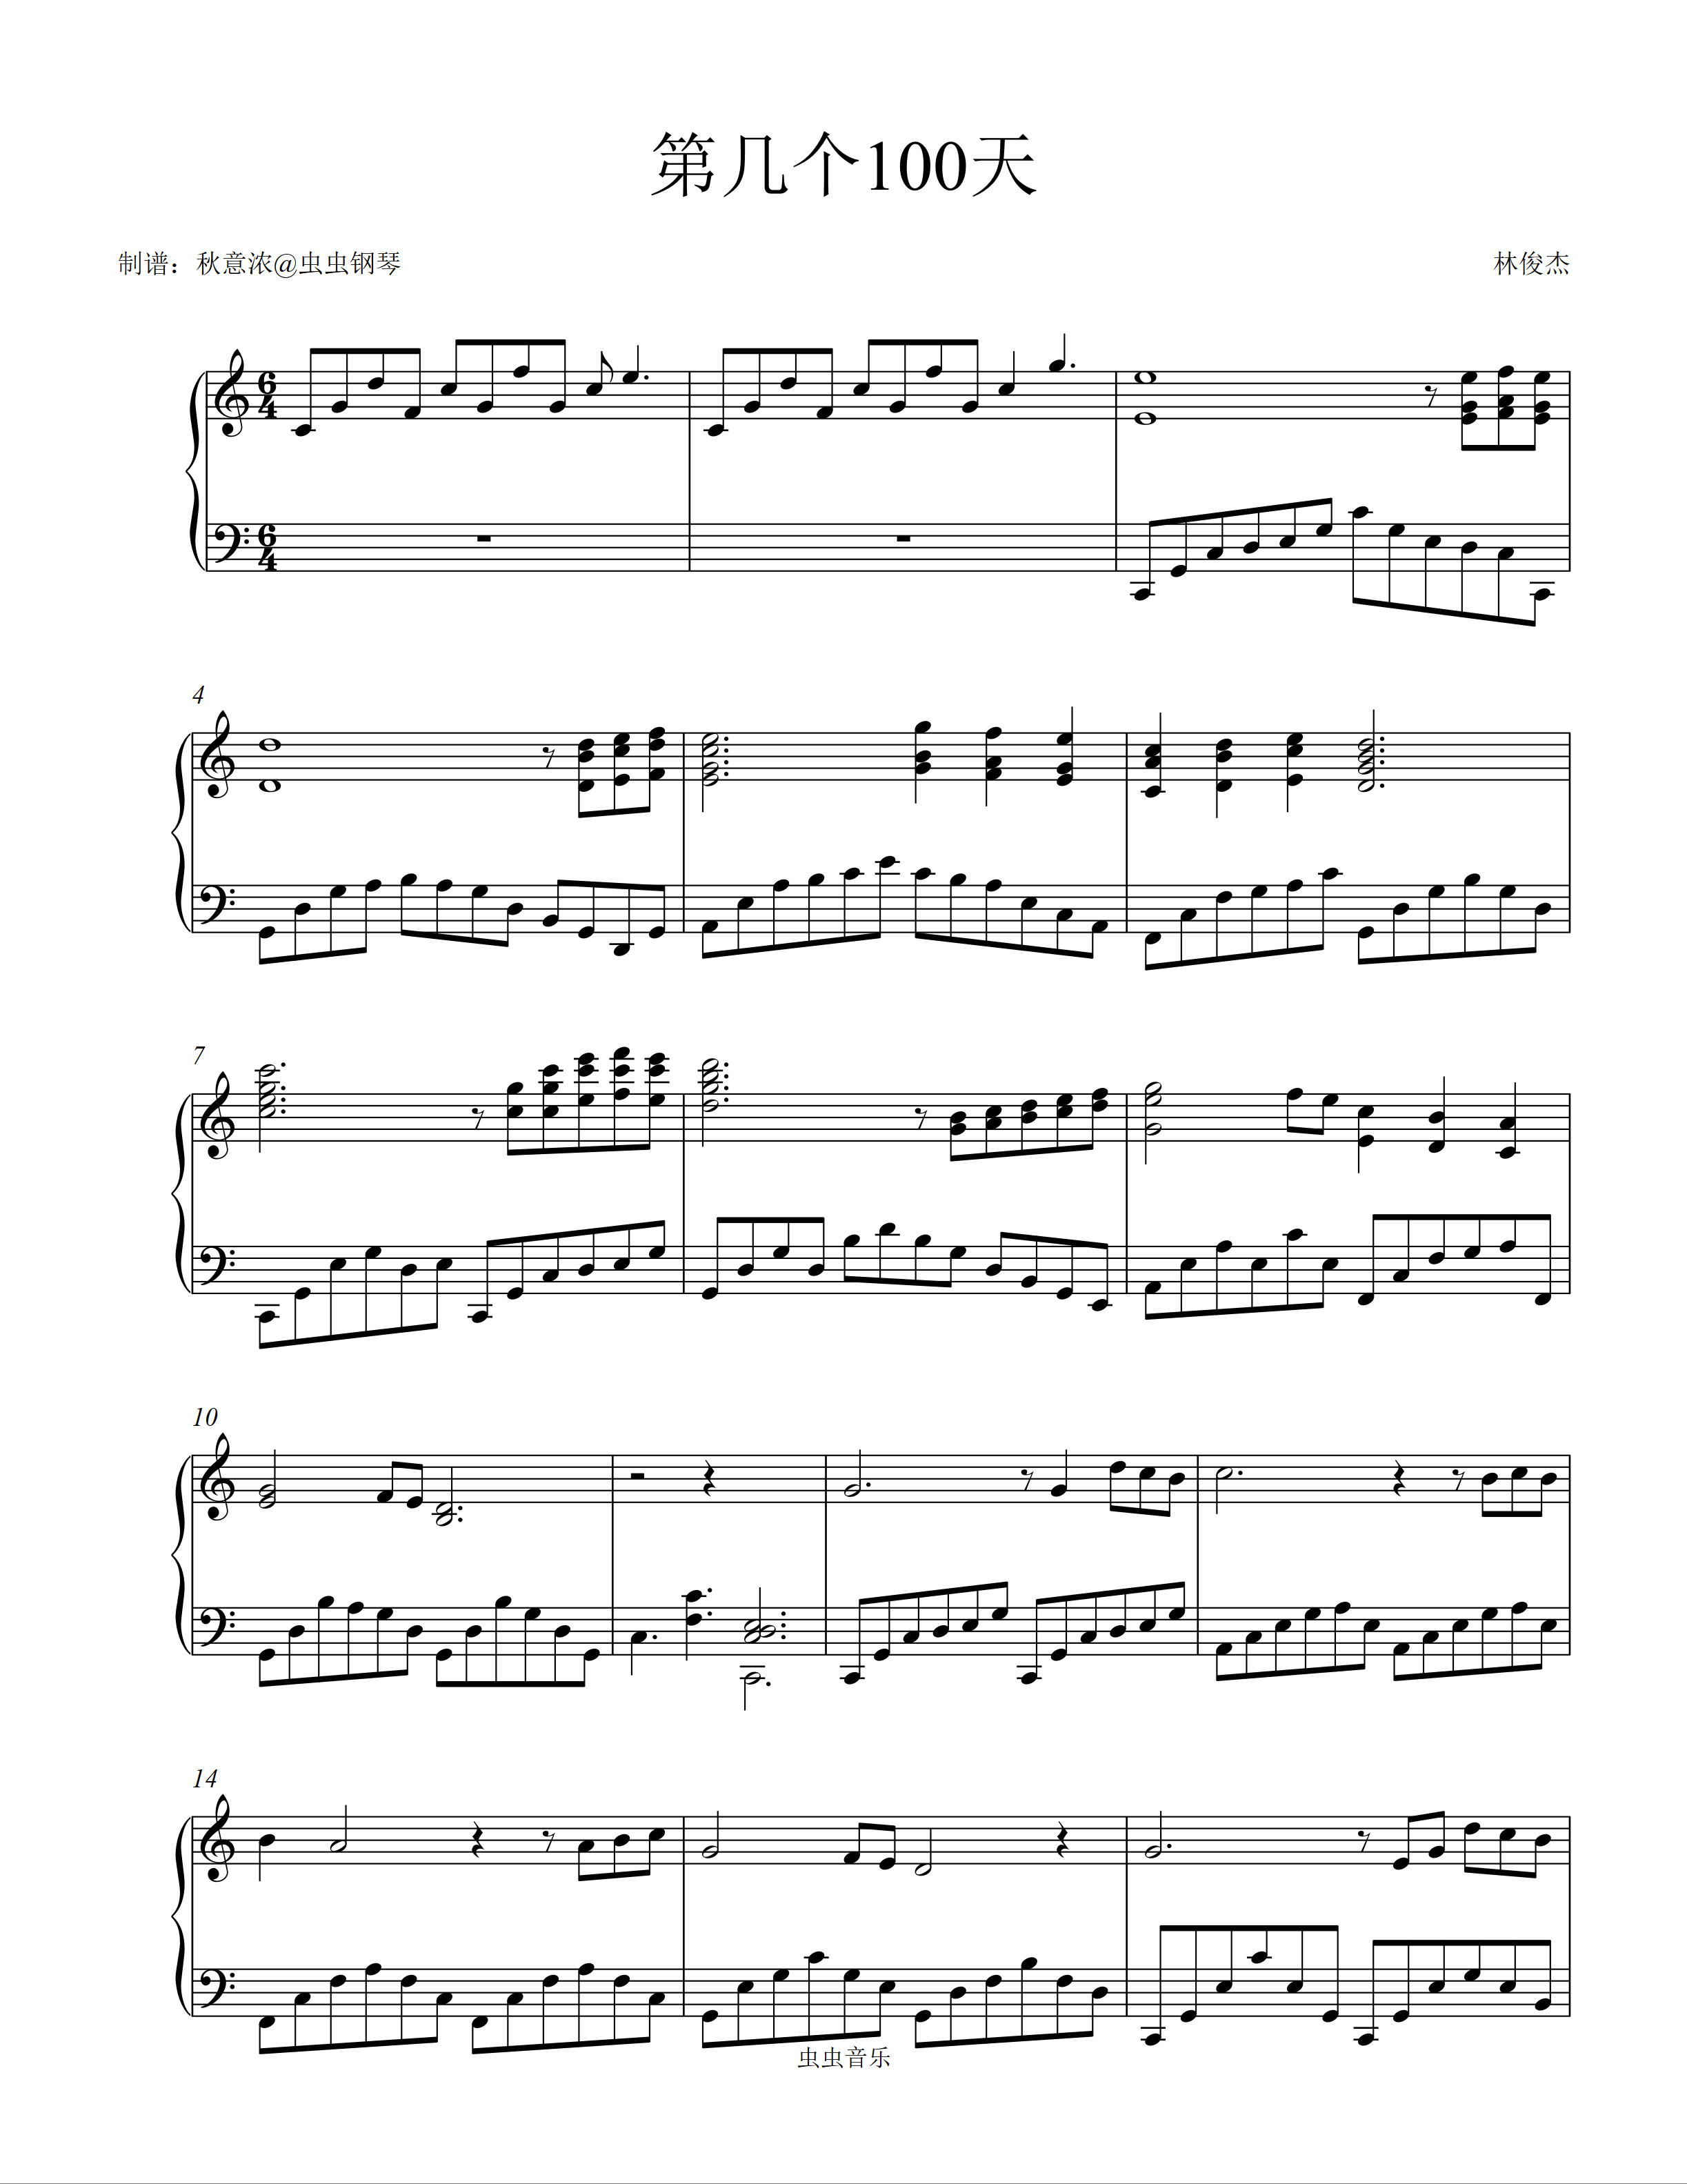 第几个100天-林俊杰双手简谱预览2-钢琴谱文件（五线谱、双手简谱、数字谱、Midi、PDF）免费下载